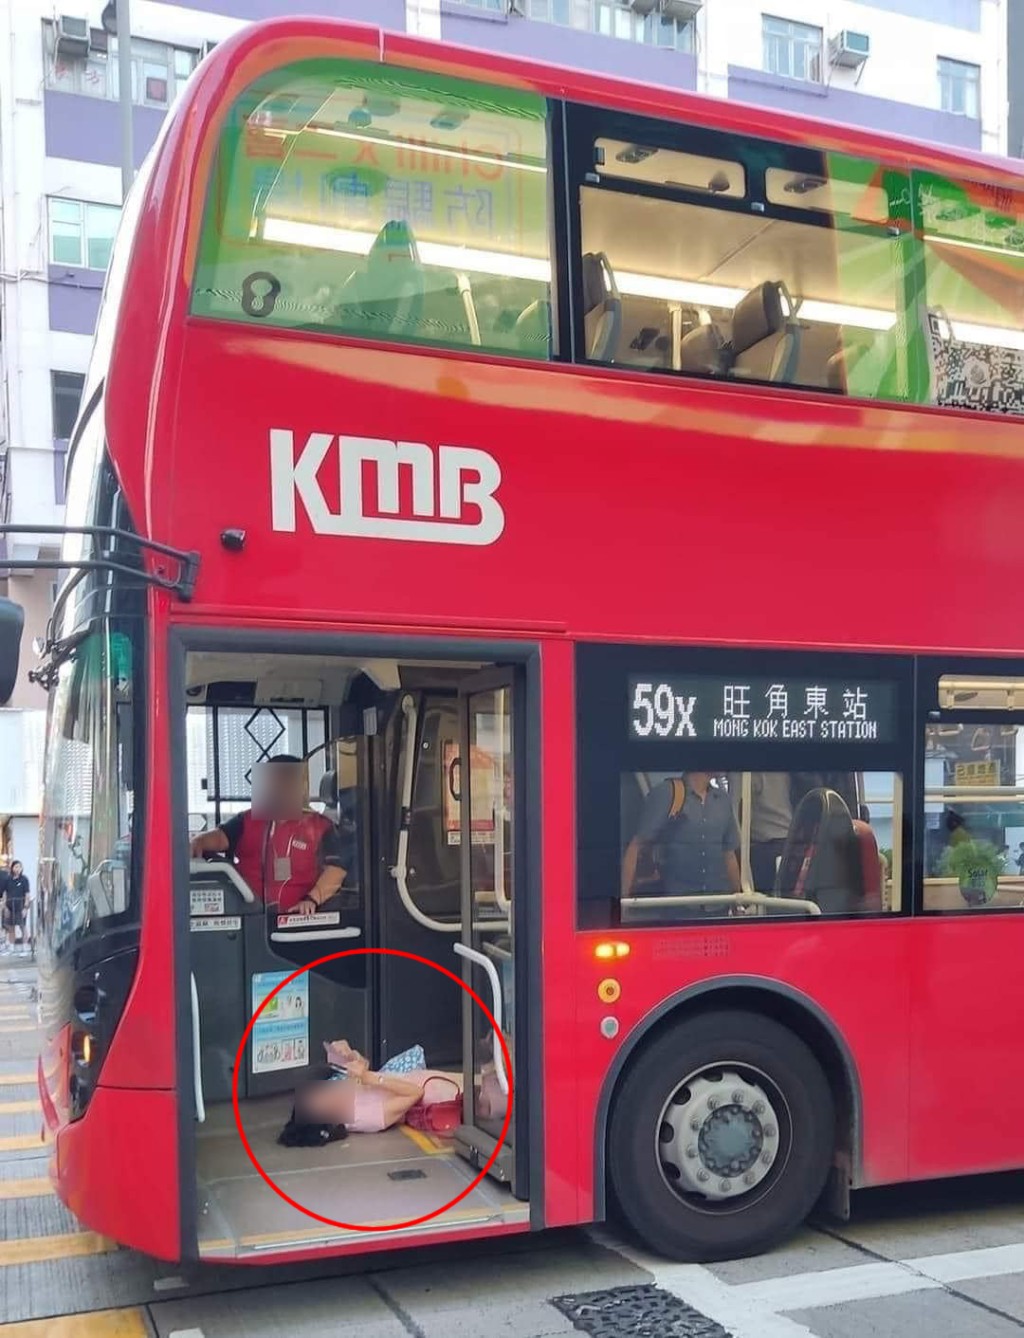 網上熱傳一張大媽在巴士上「瞓地」玩手機的相片。(是日快快-巴士即日相FB相片)